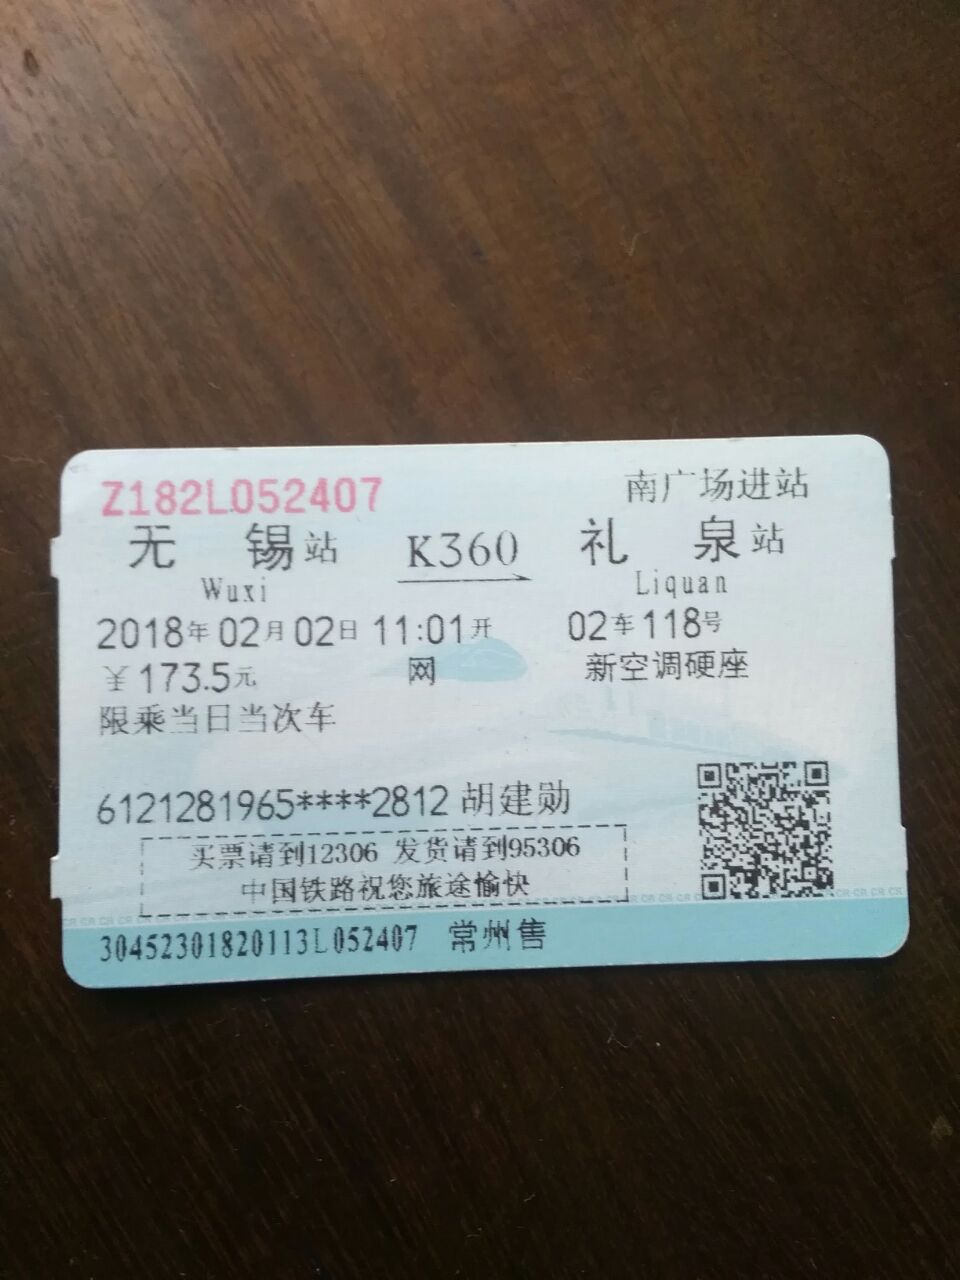 我买的是无锡到礼泉的k36o新空调硬座票,问从常州火车站能上车吗